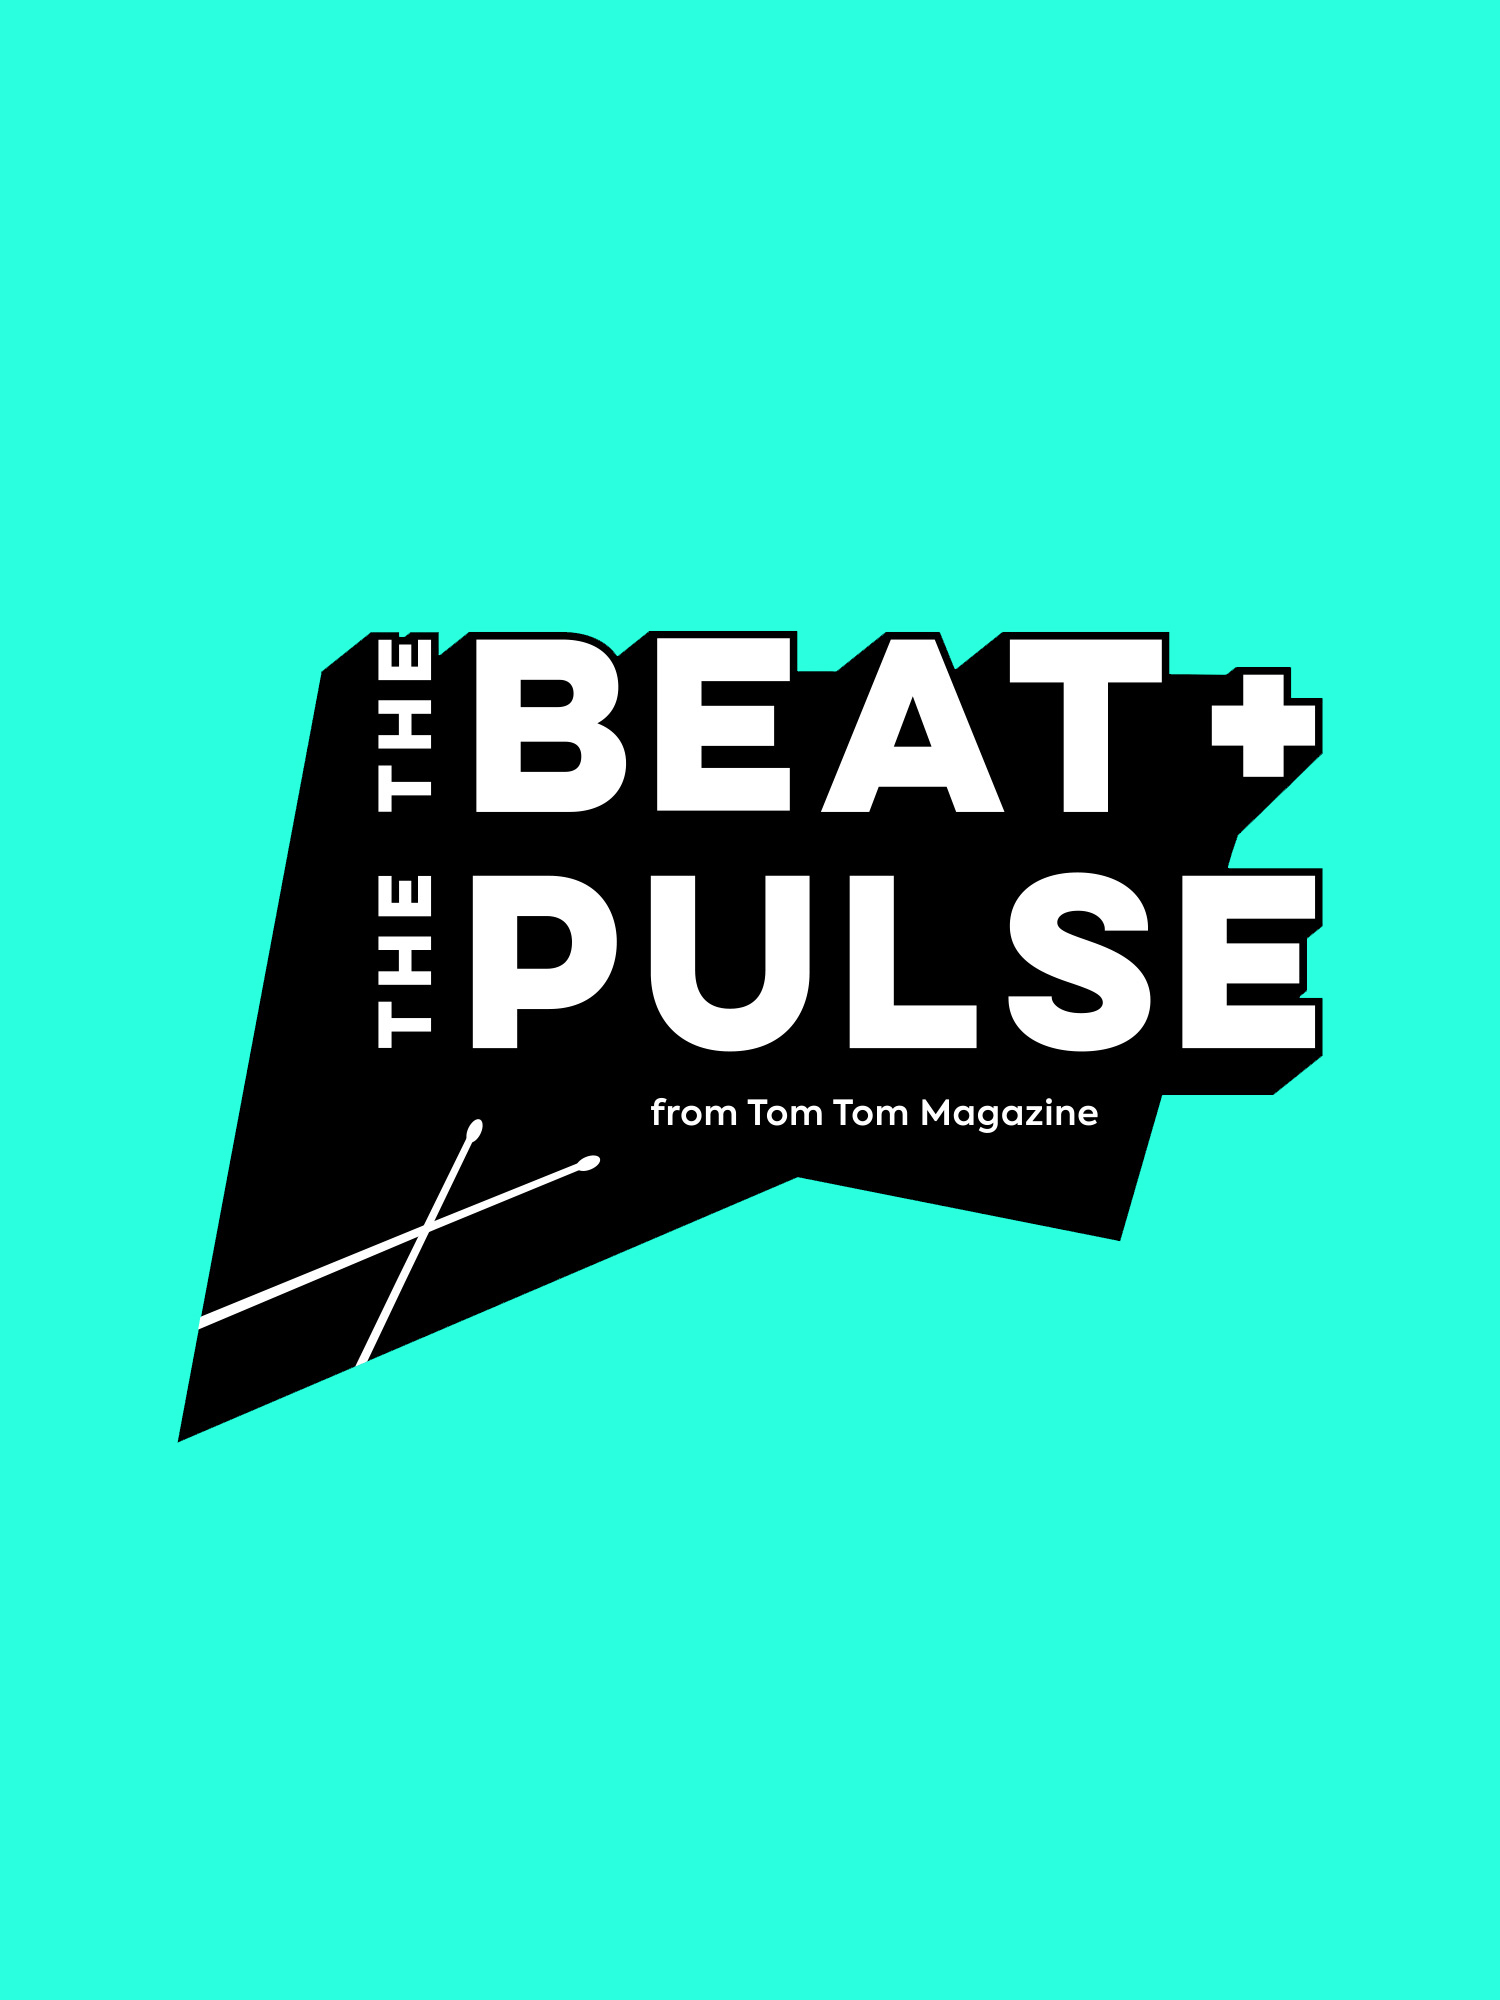 TomTom-BeatPulse-Logo-01-1